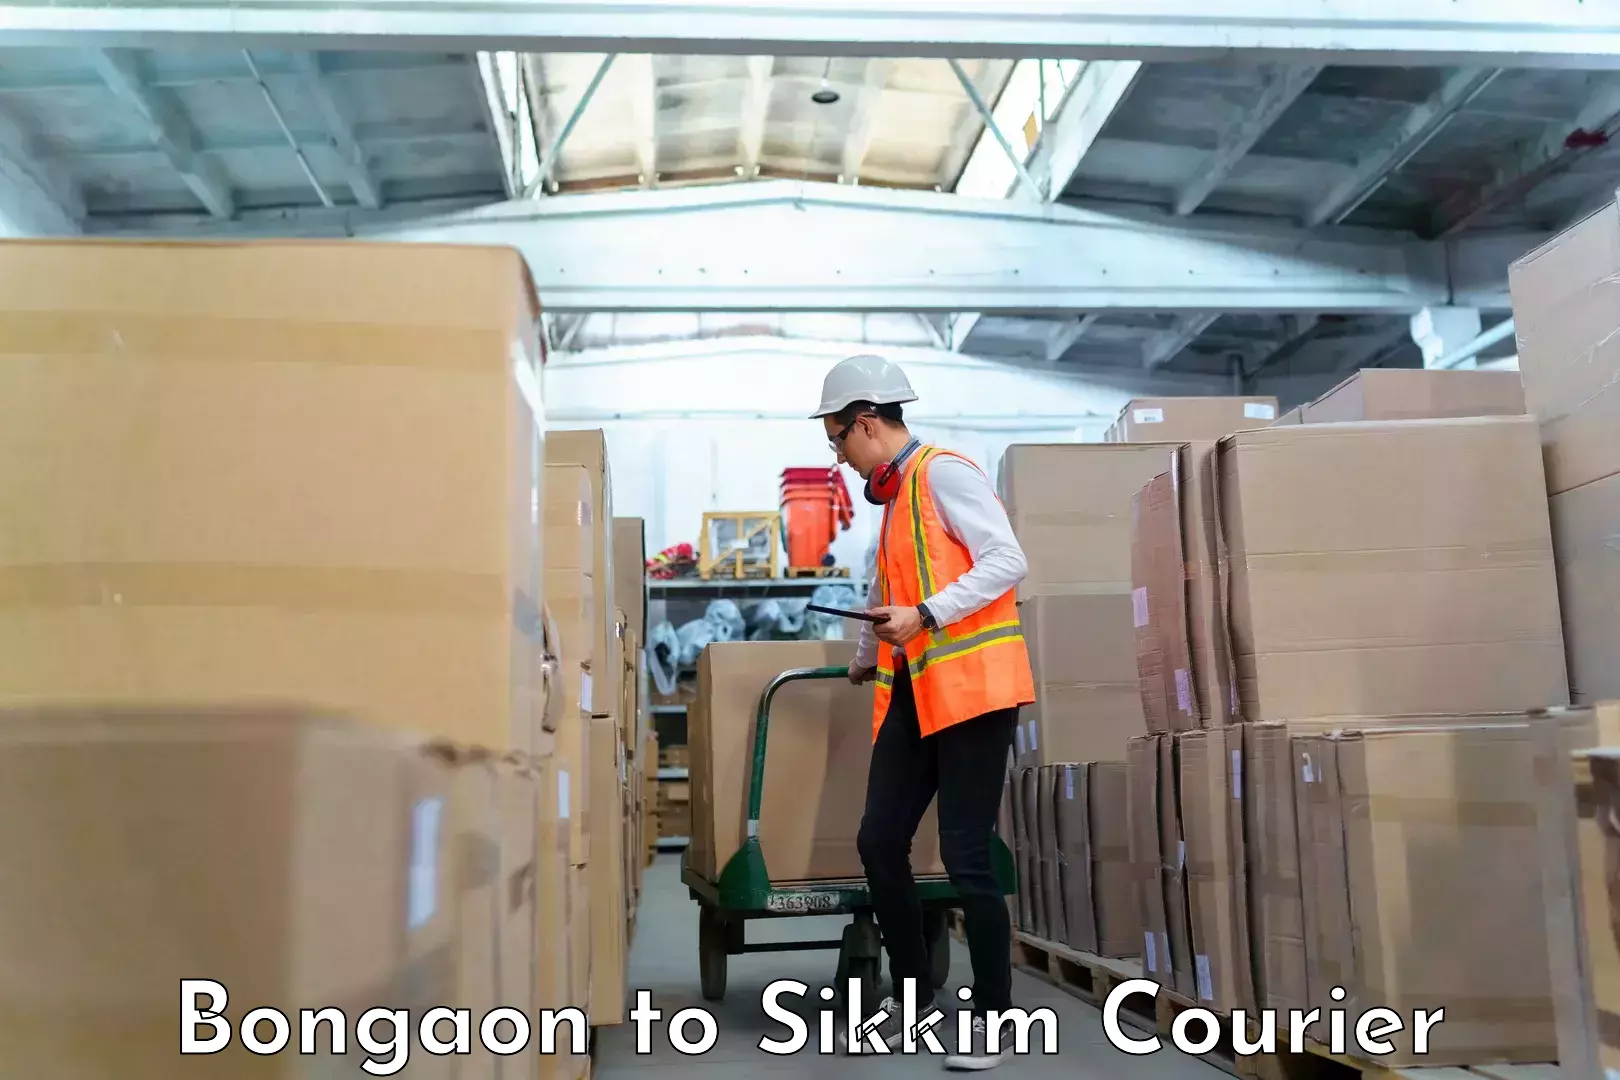 Luggage transport company Bongaon to Singtam